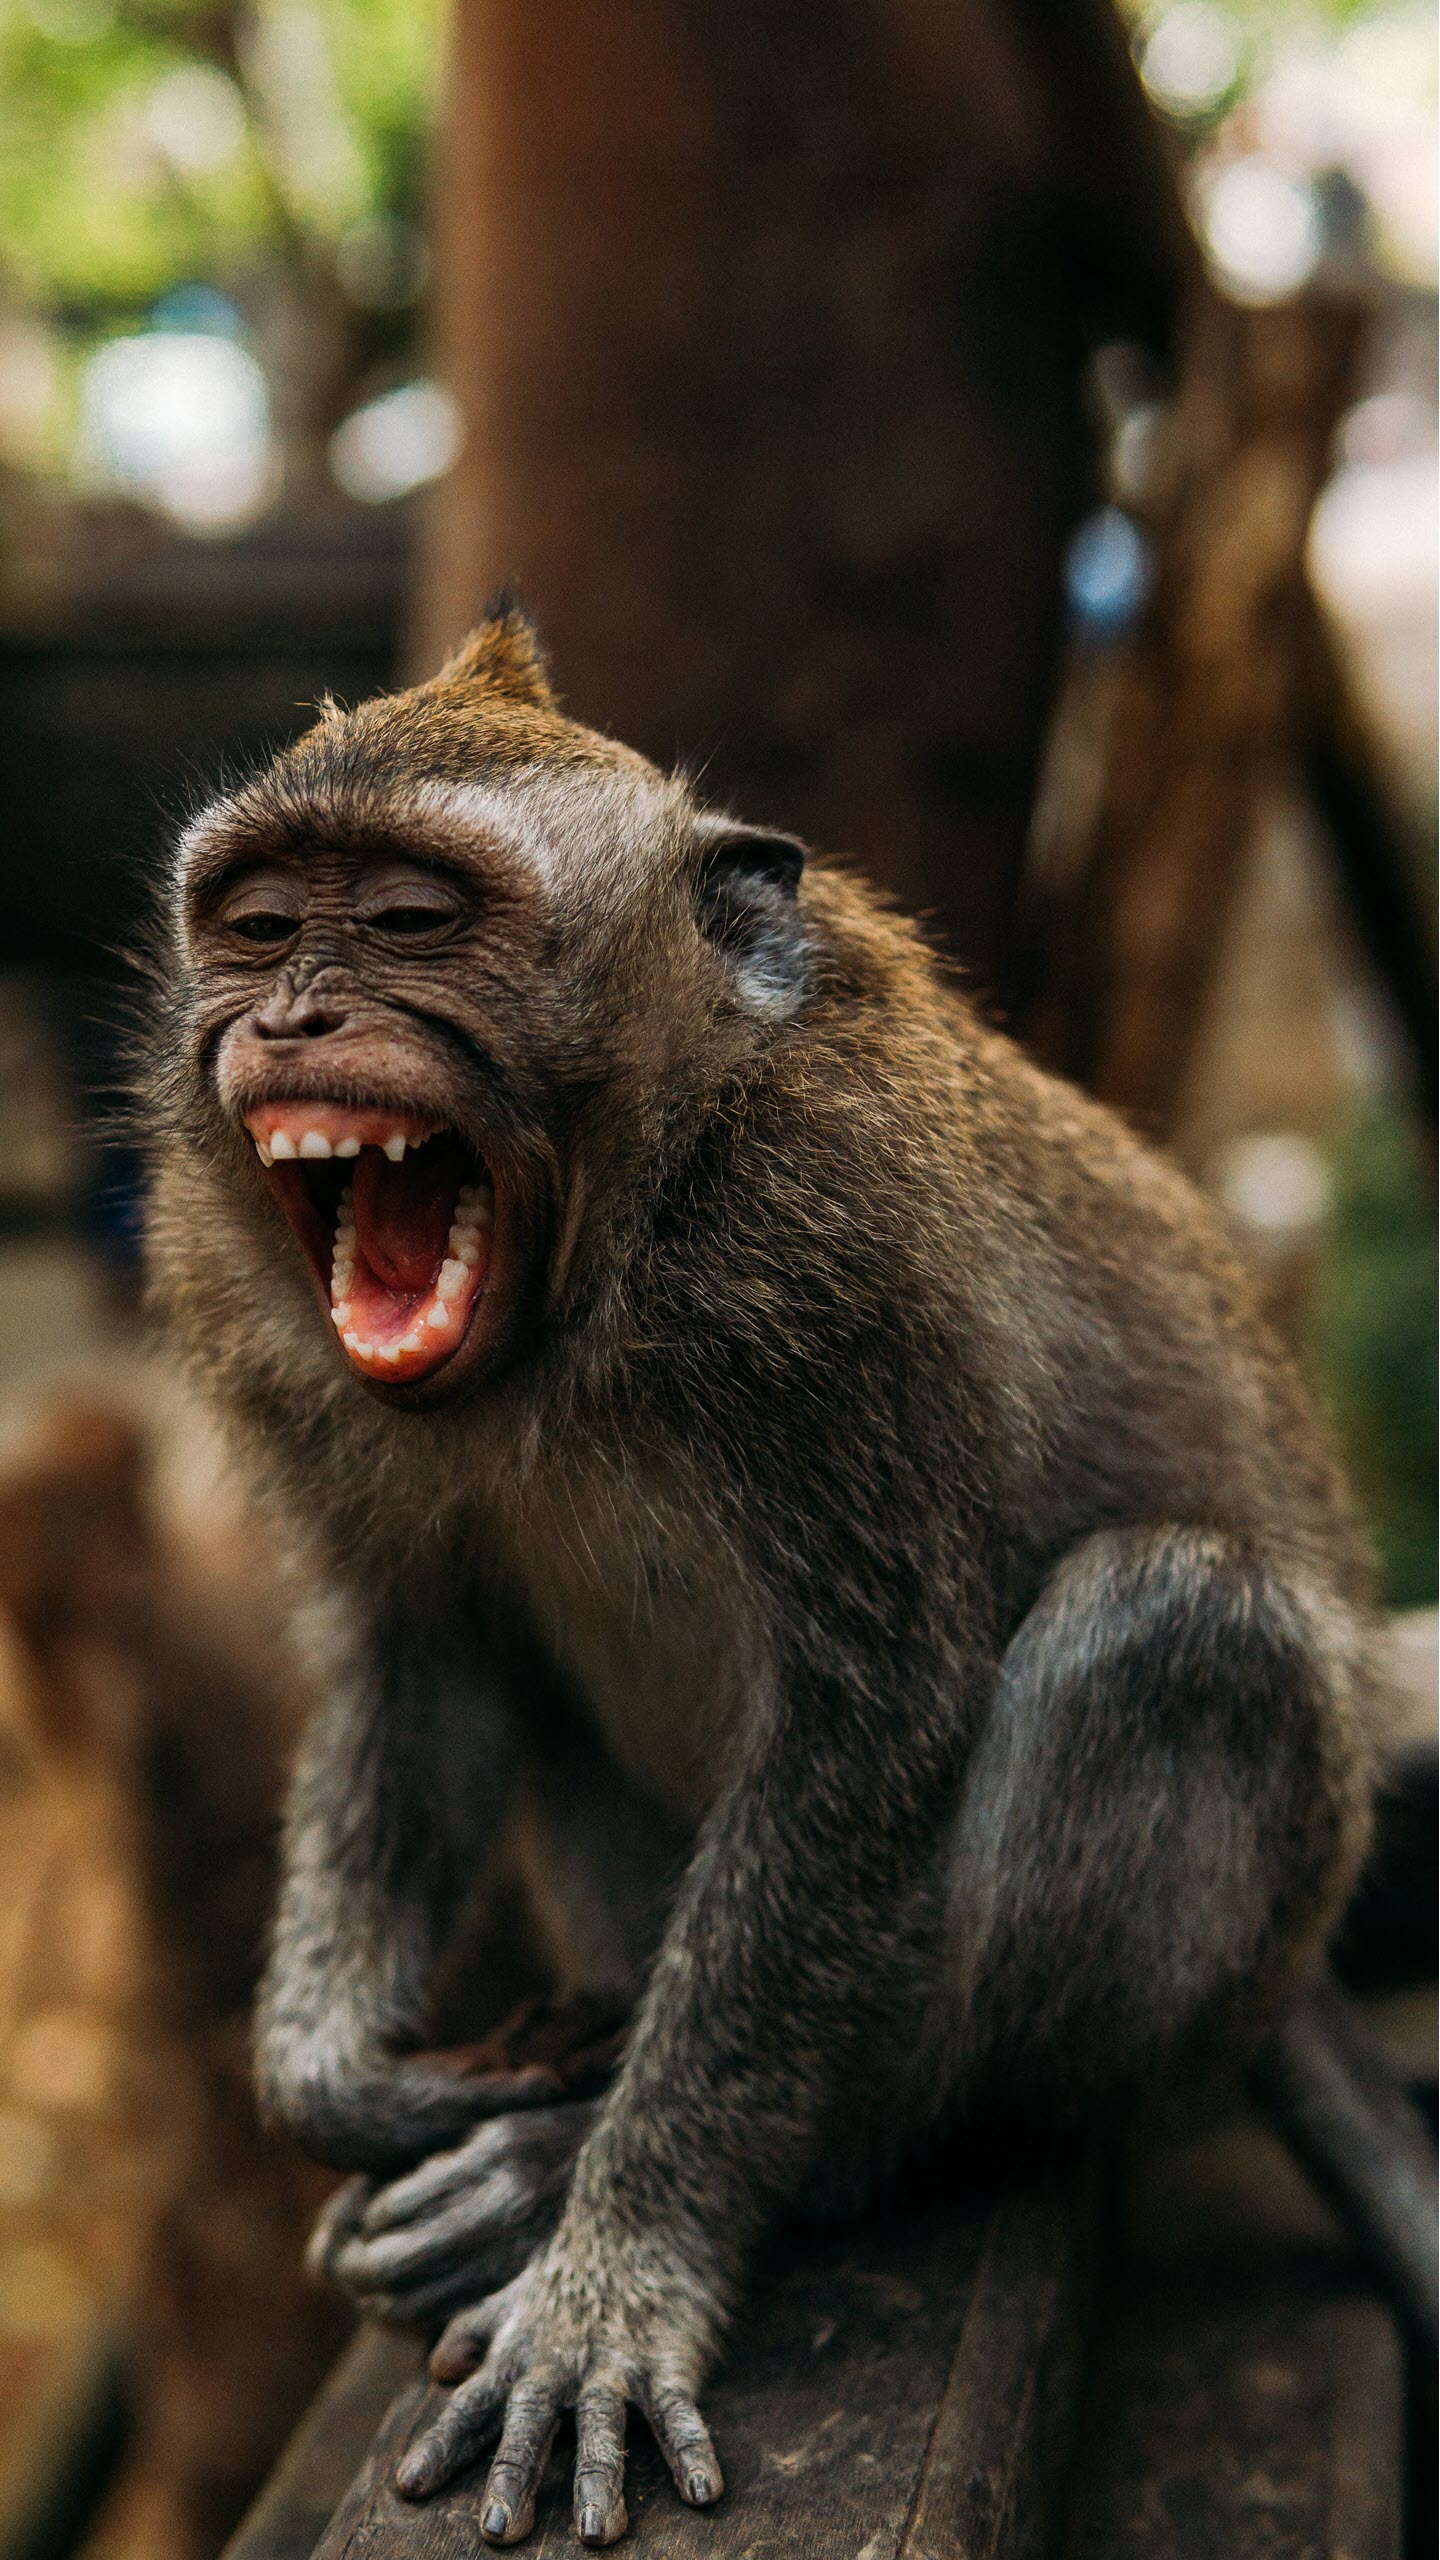 Bạn muốn tìm hình nền khỉ dễ thương để trang trí cho màn hình điện thoại? Vậy thì hãy tải về ngay bộ sưu tập hình ảnh khỉ cực kỳ đáng yêu của chúng tôi. Chắc chắn bạn sẽ không thể cưỡng lại sự dễ thương và duyên dáng của những bức hình này.